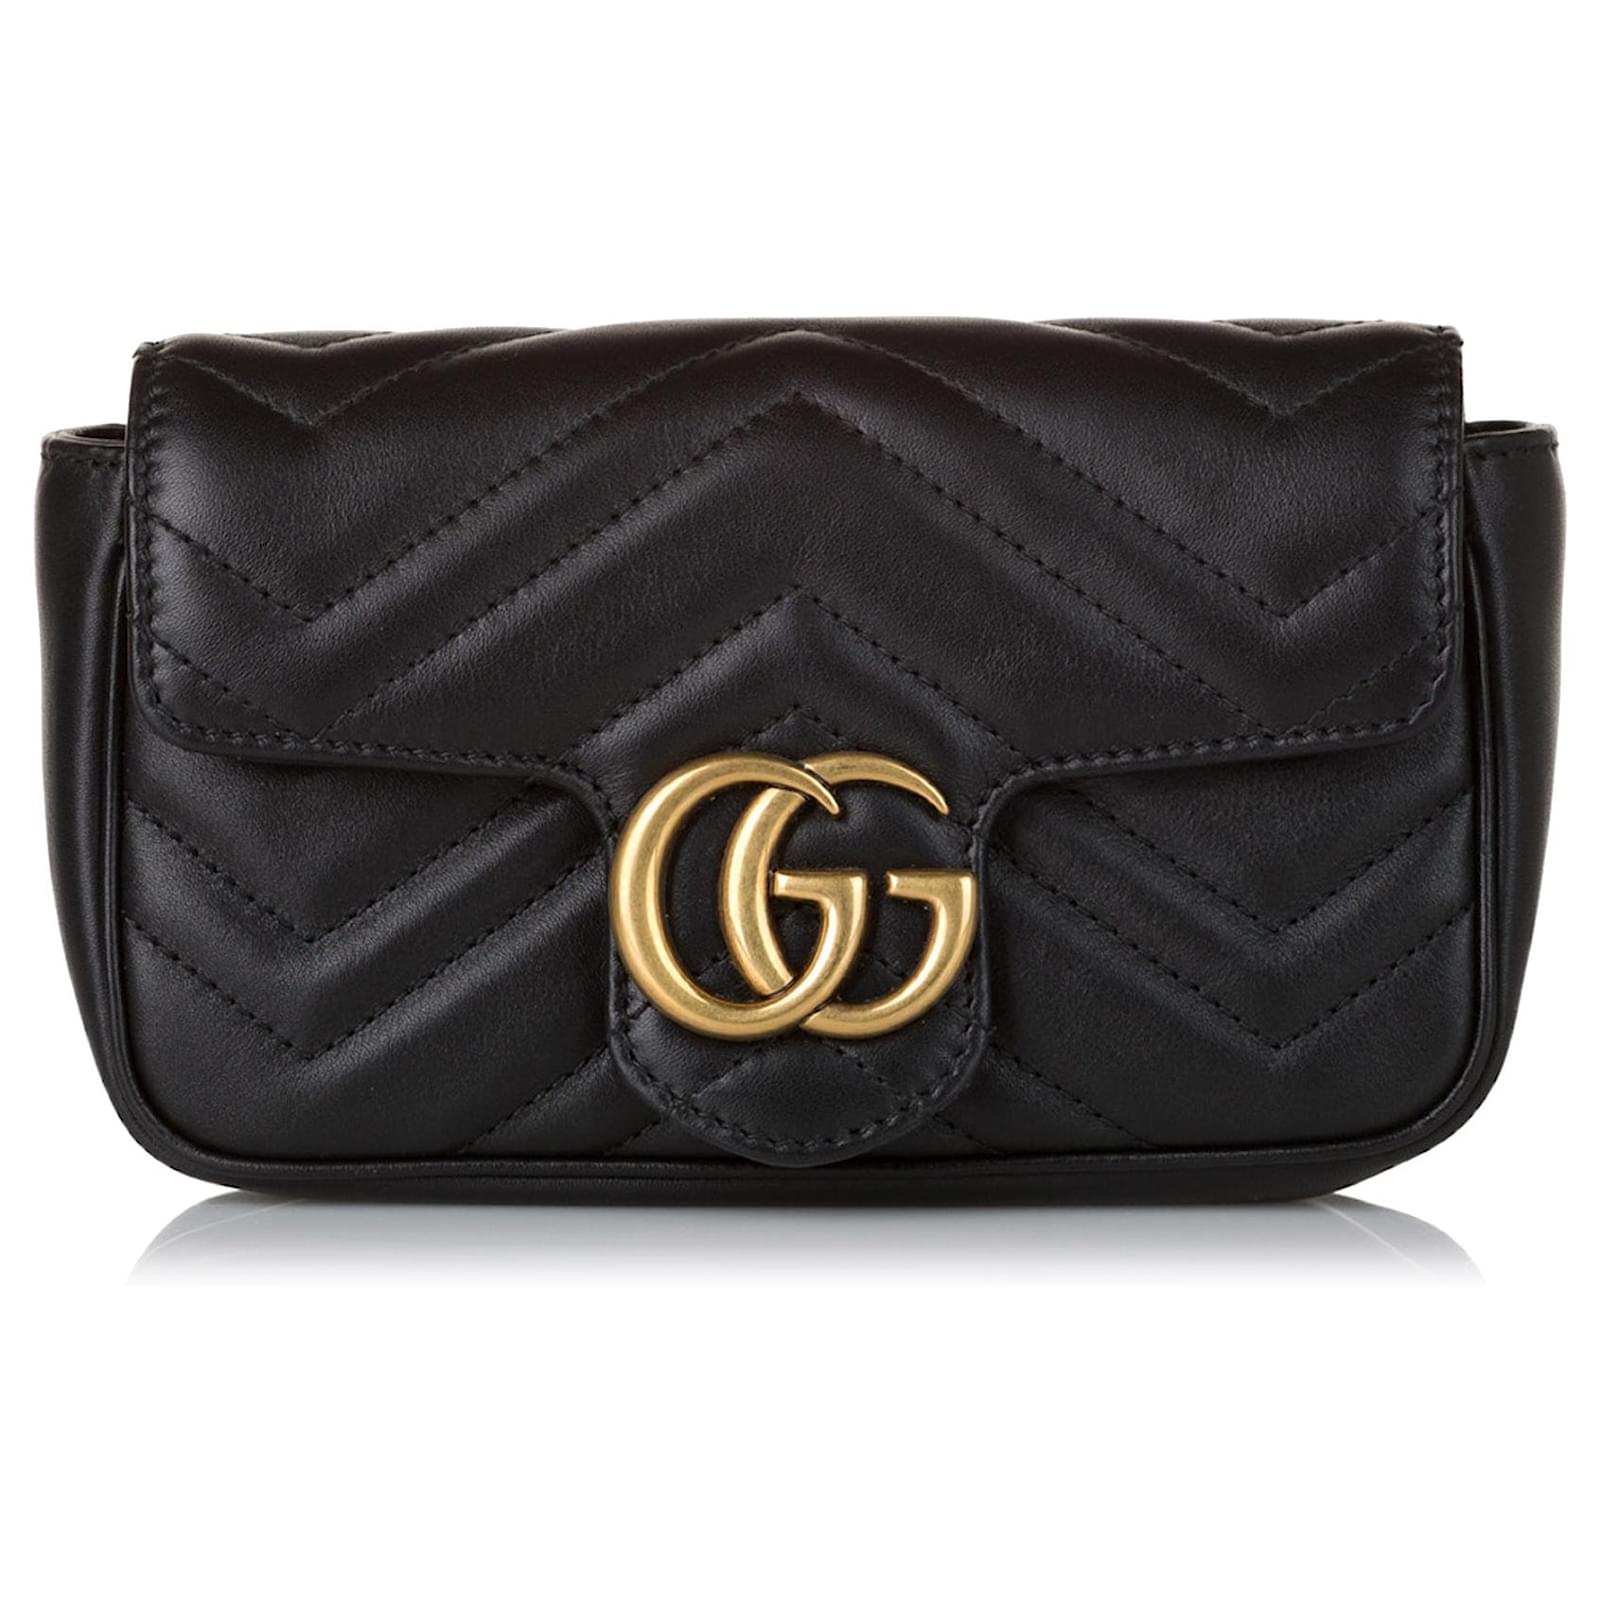 Gucci GG Marmont Super Mini Bag in Black